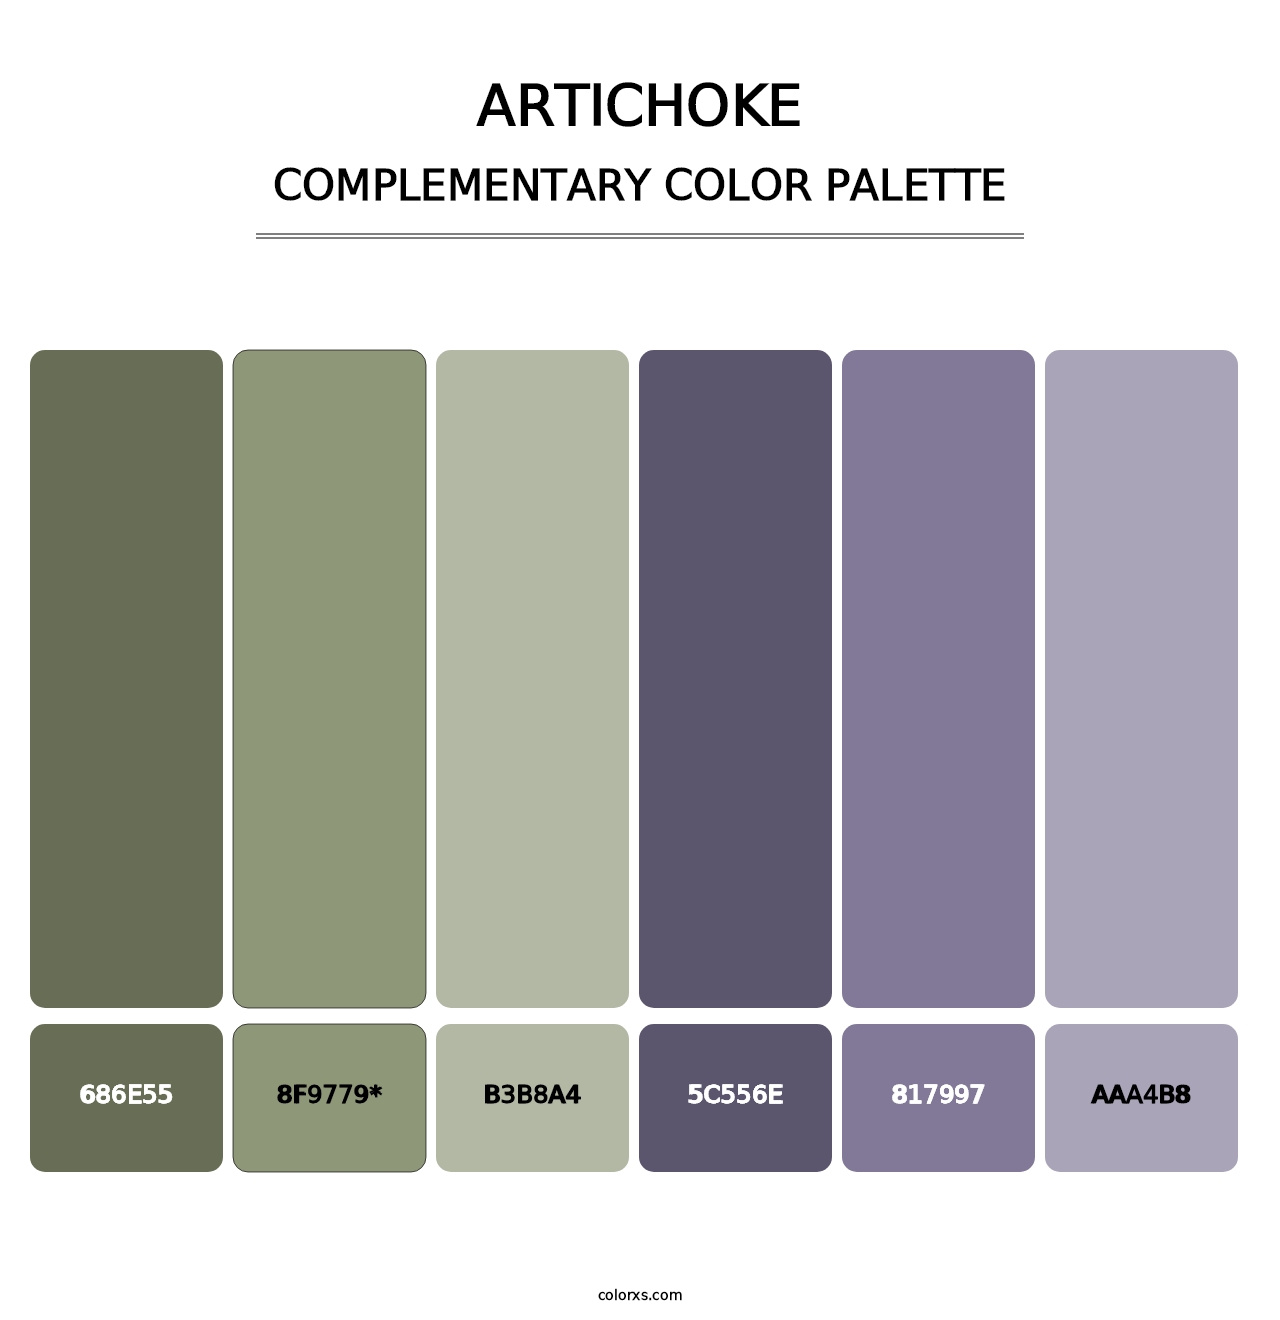 Artichoke - Complementary Color Palette